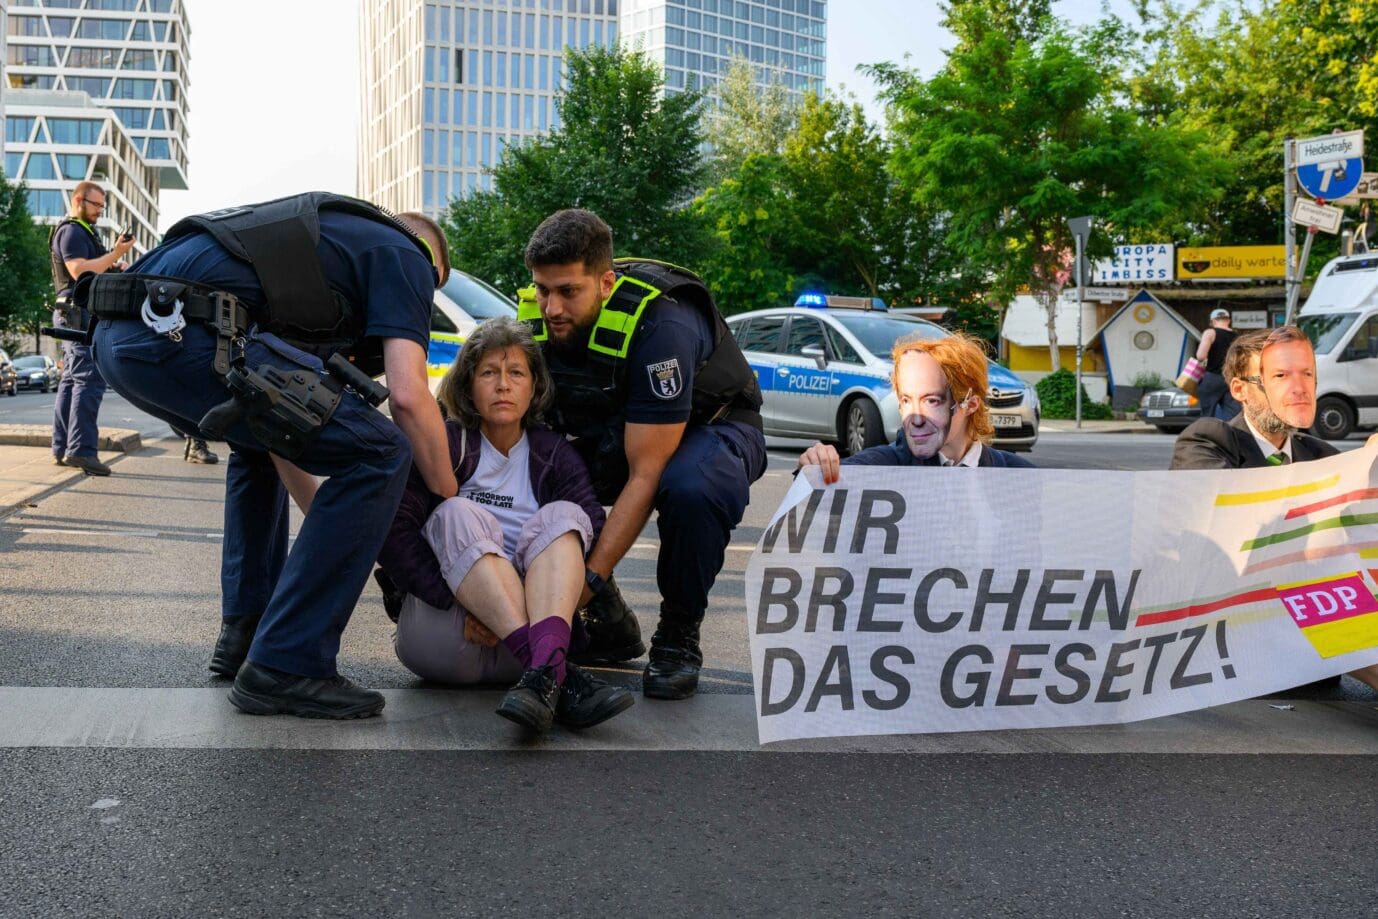 berliner-justiz-stellt-nach-erneuter-untersuchung-fest:-„letzte-generation“-ist-keine-kriminelle-vereinigung